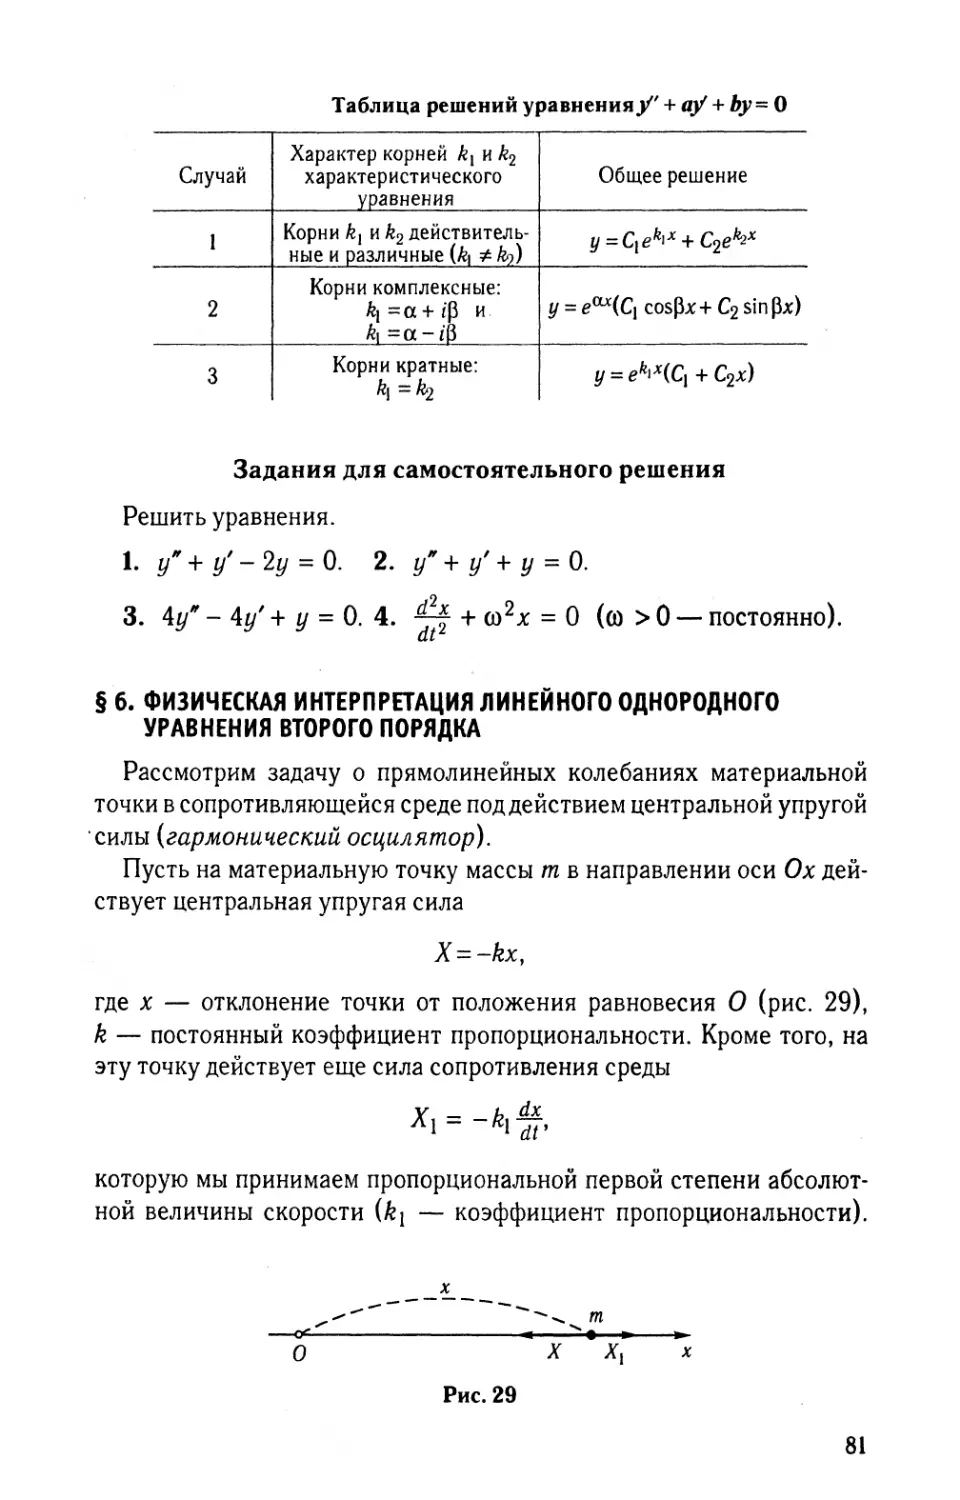 § 6. Физическая интерпретация линейного однородного уравнения второго порядка